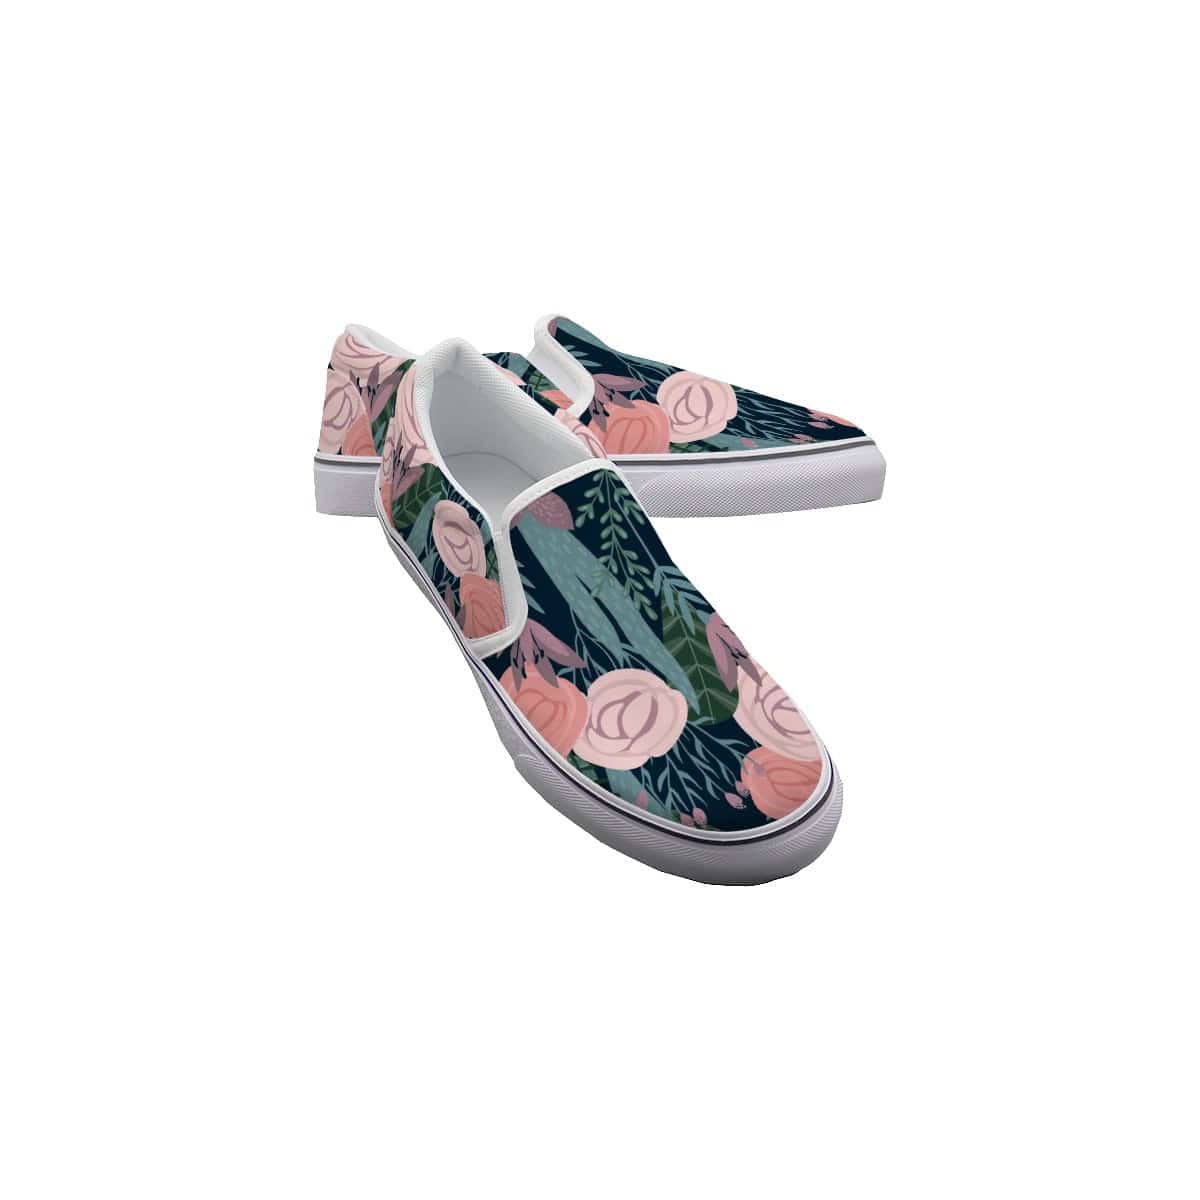 Yoycol White / US6(EUR36) Rose Trellis - Women's Slip On Sneakers